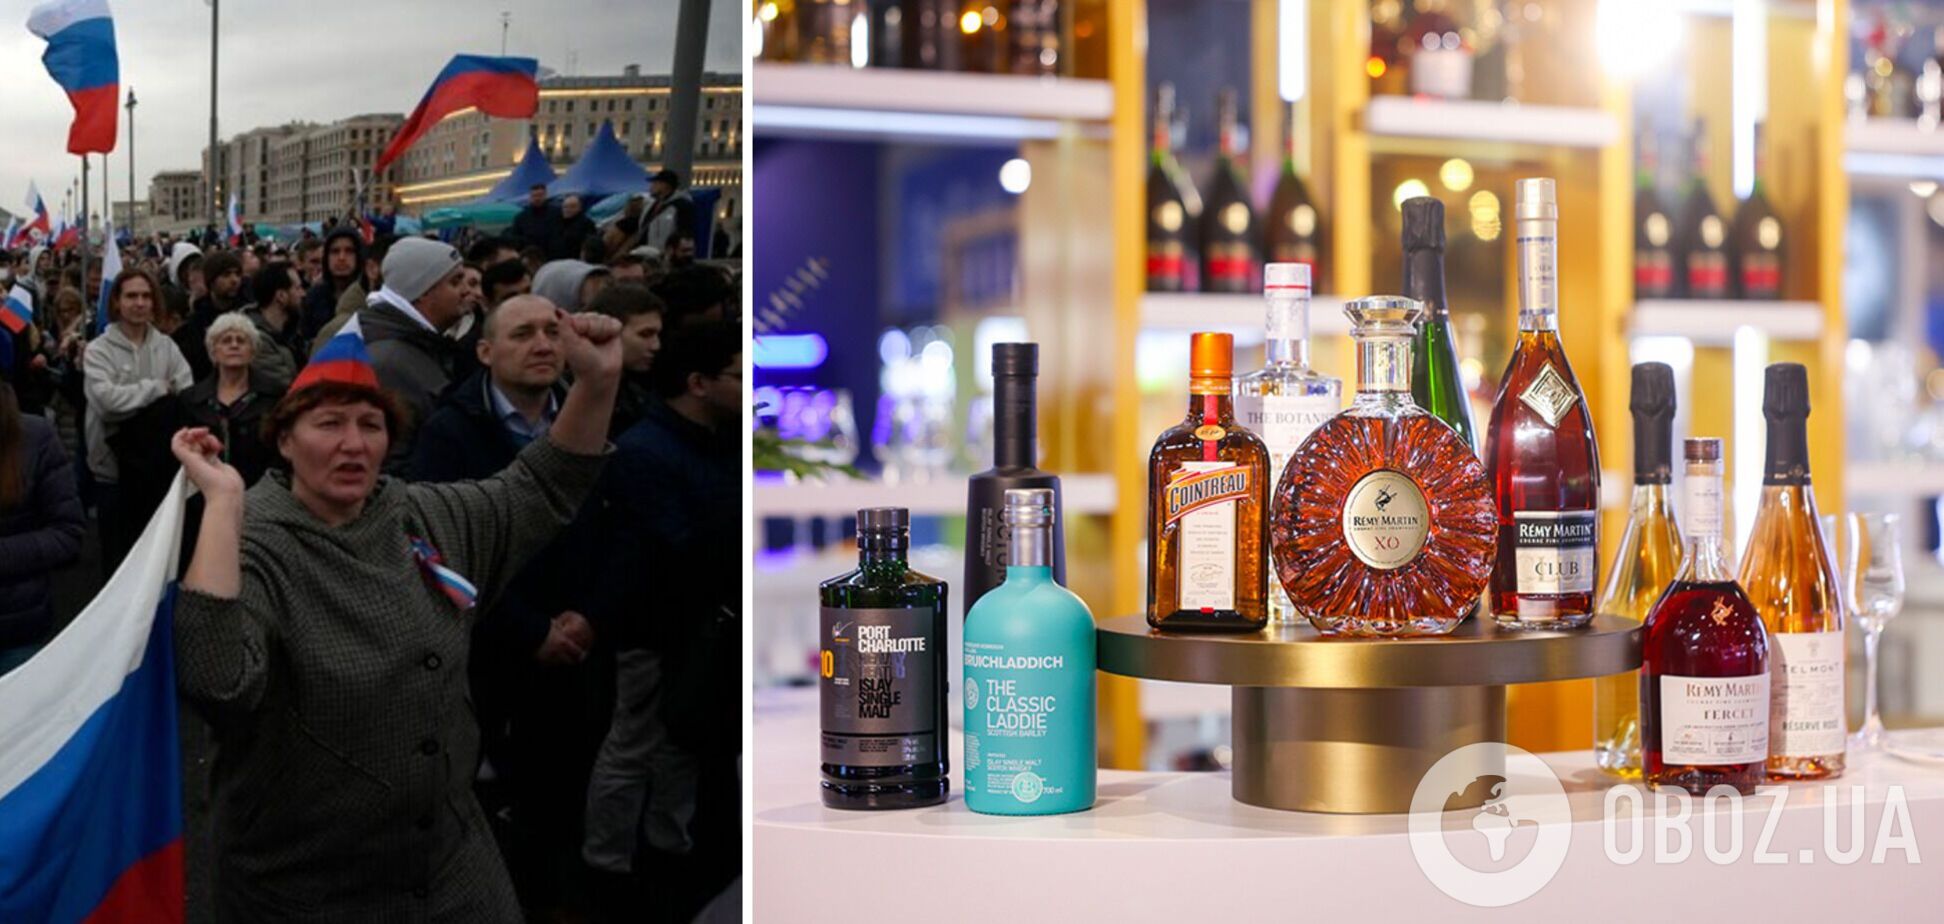 Россияне продолжают пить западный алкоголь, несмотря на 'санкции'